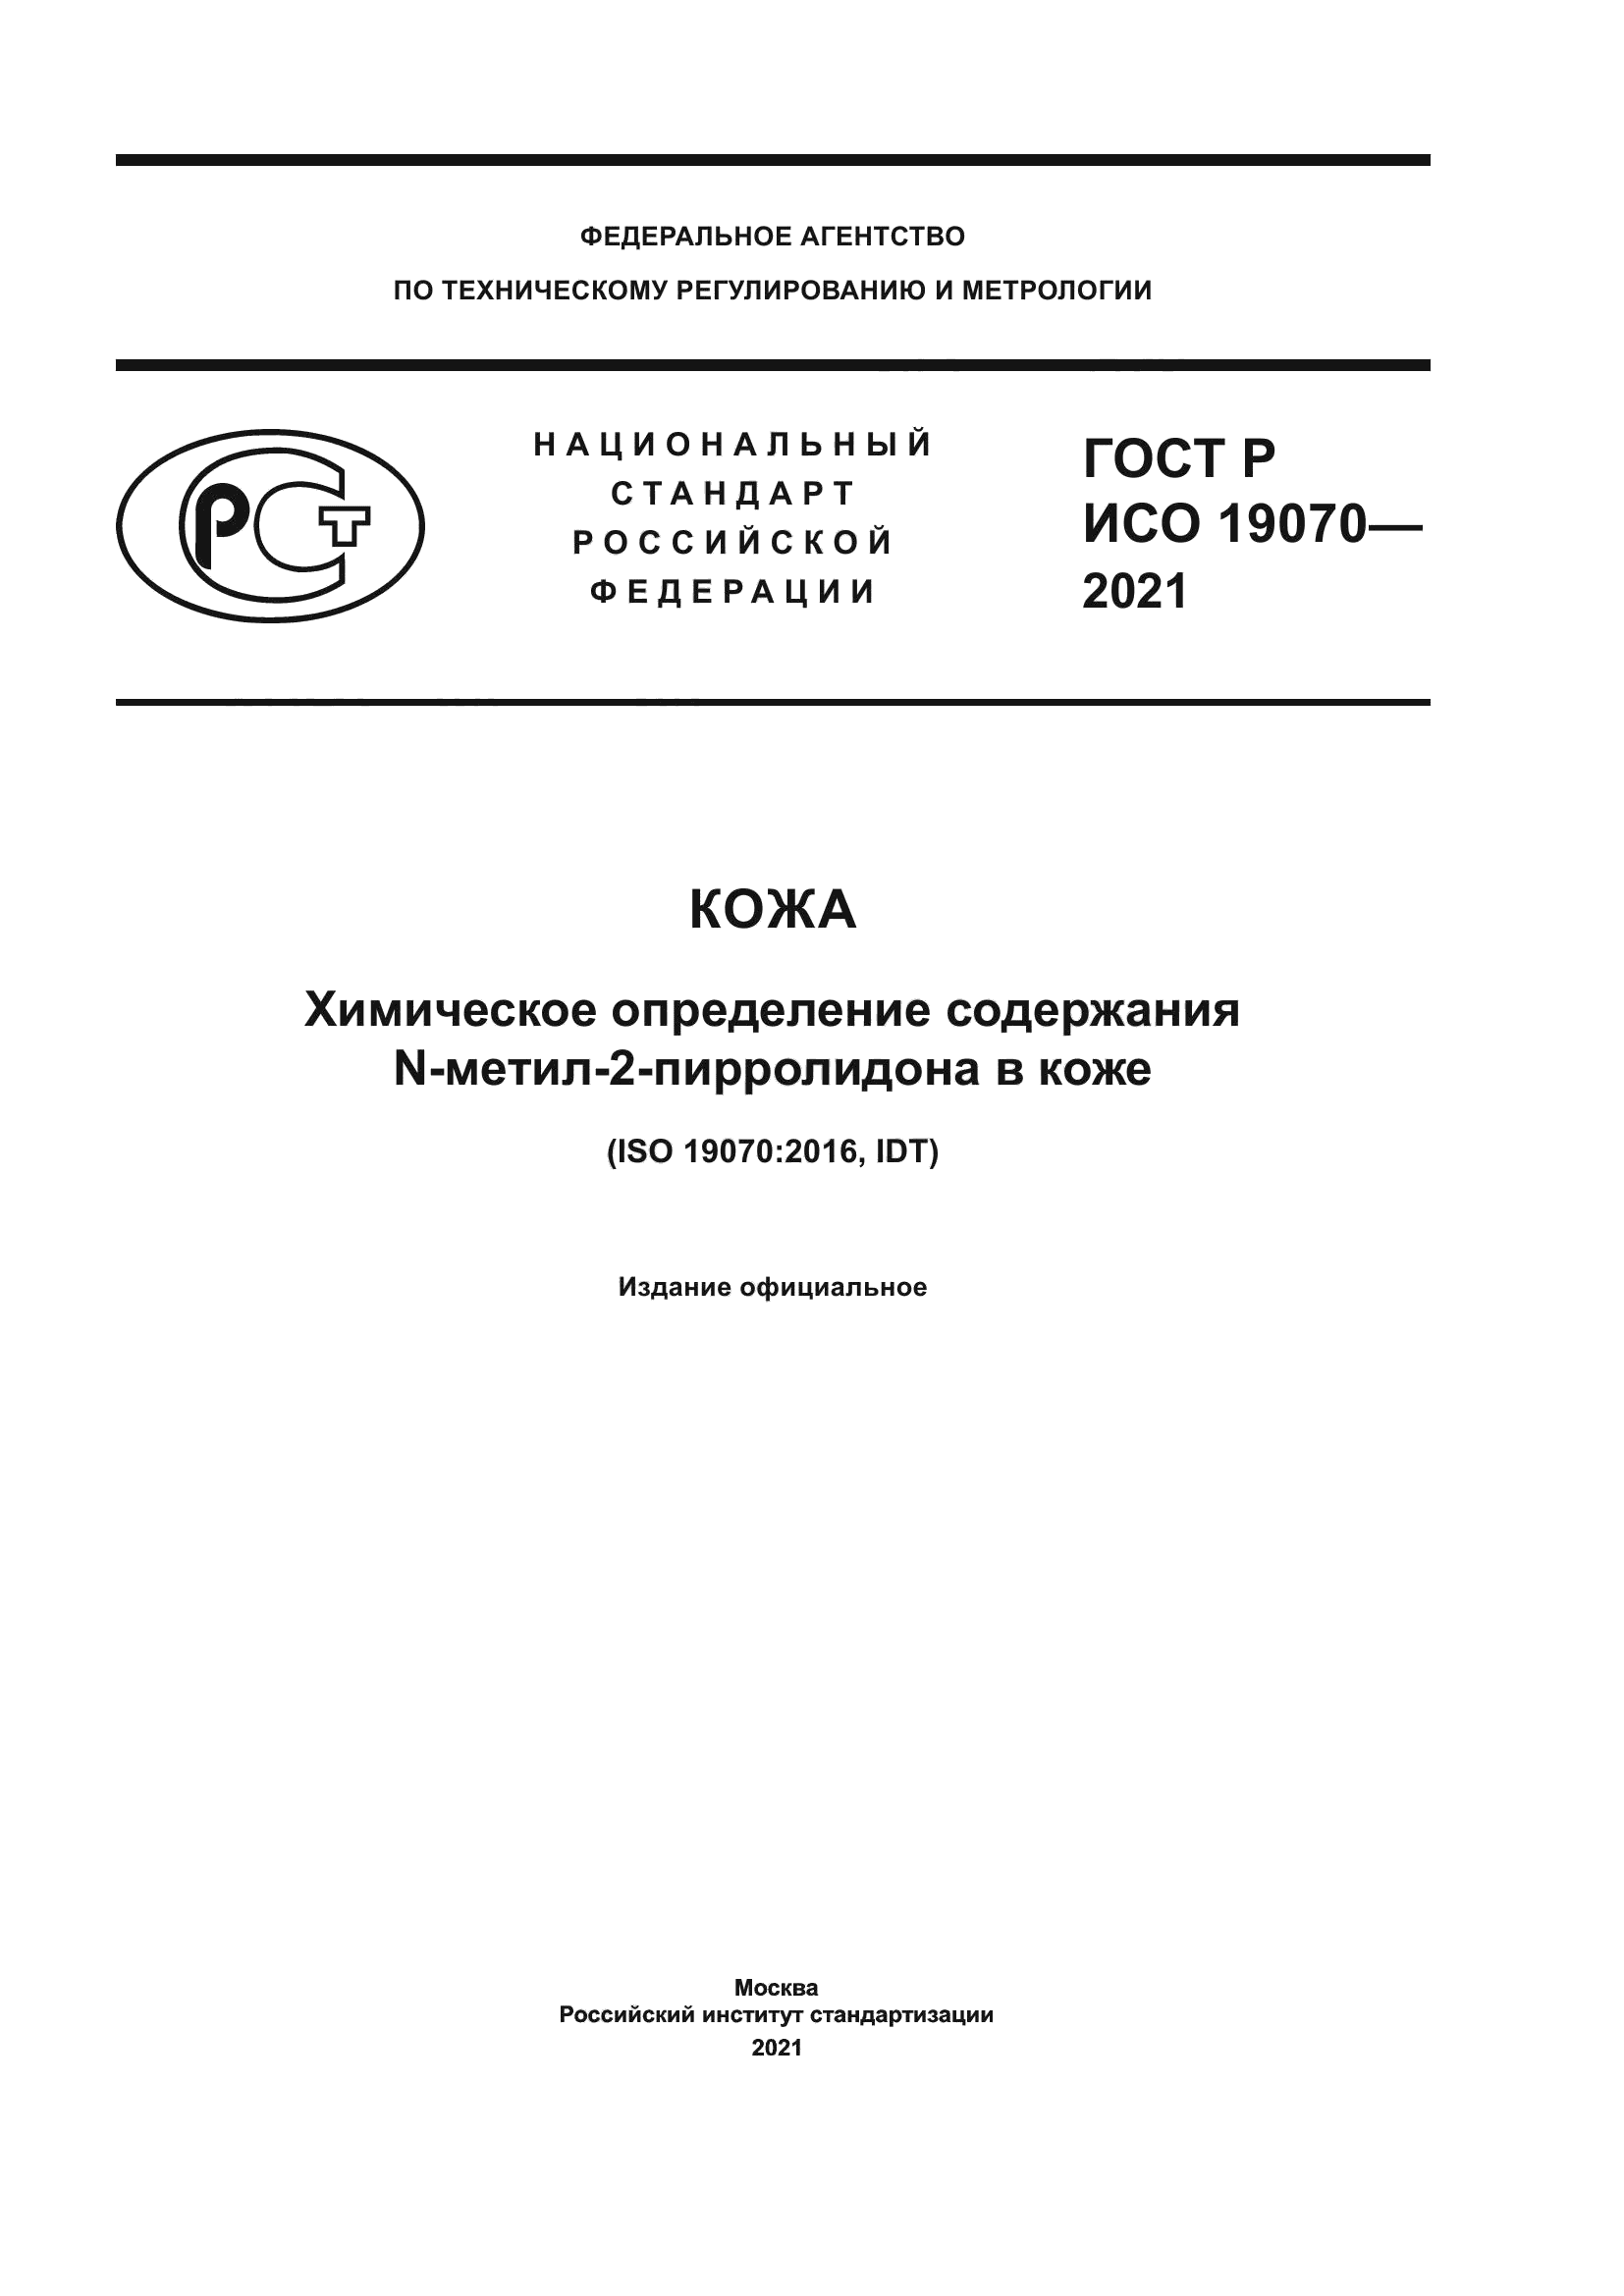 ГОСТ Р ИСО 19070-2021